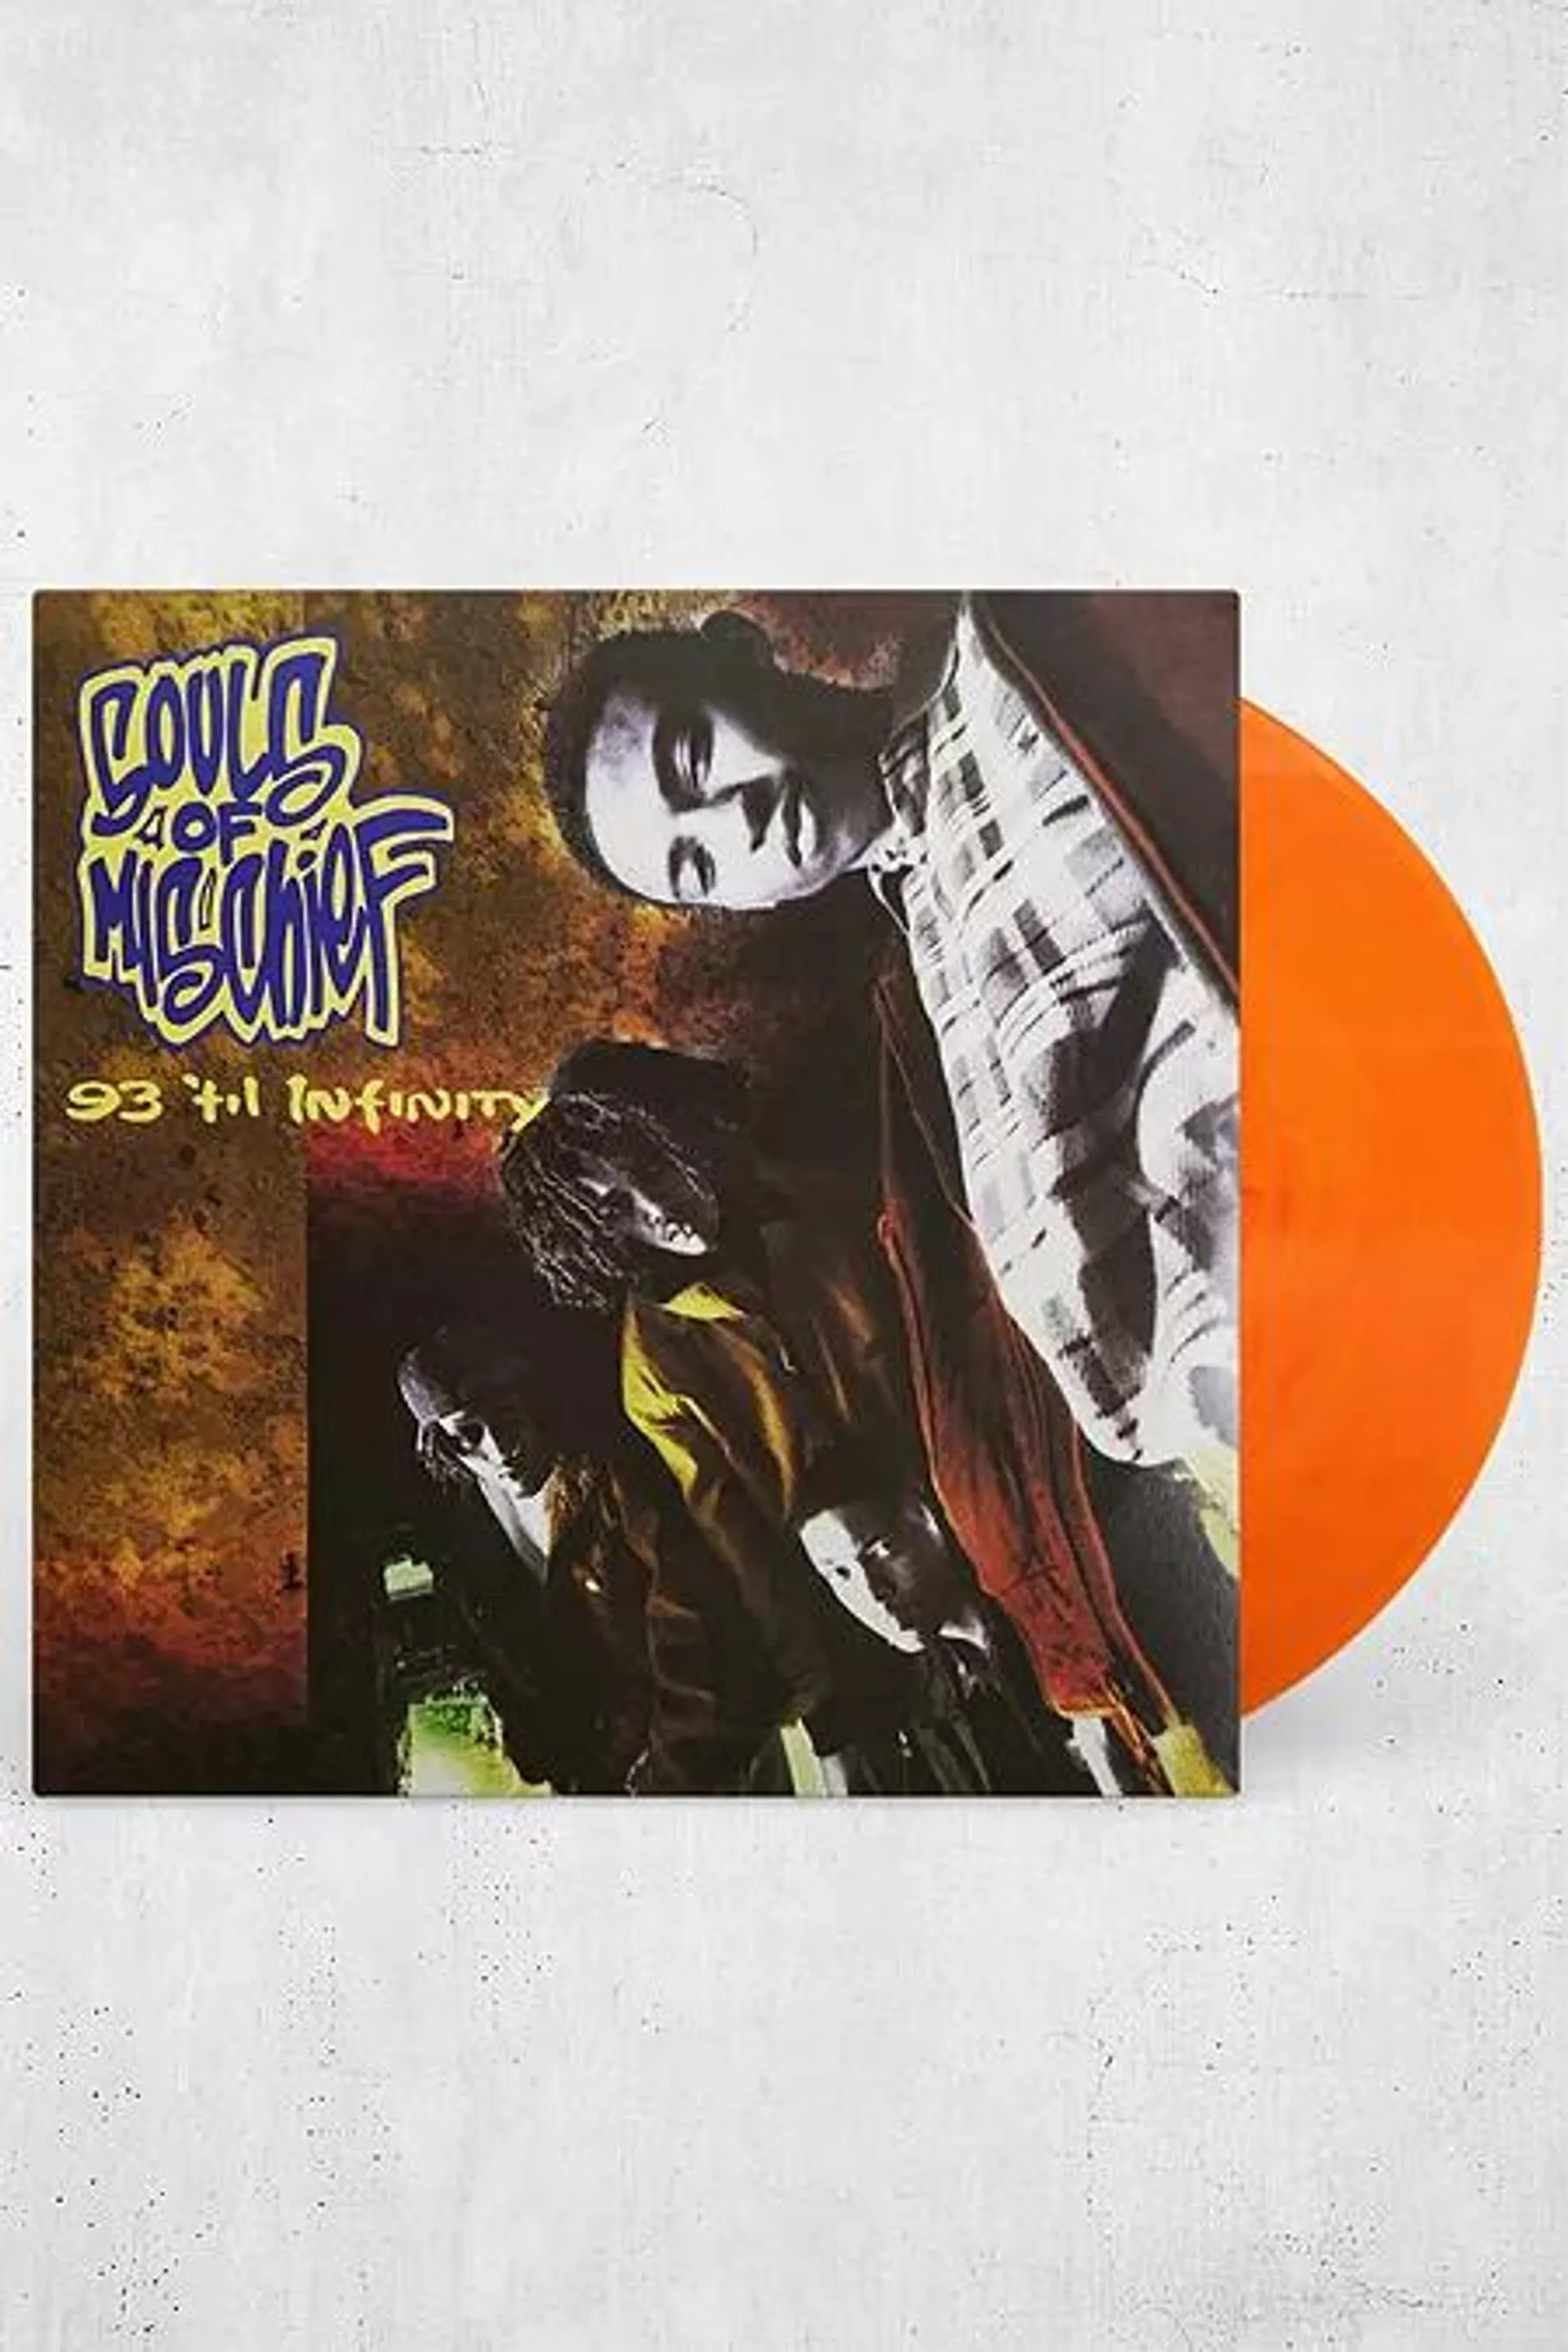 Souls Of Mischief - 93 'Til Infinity LP